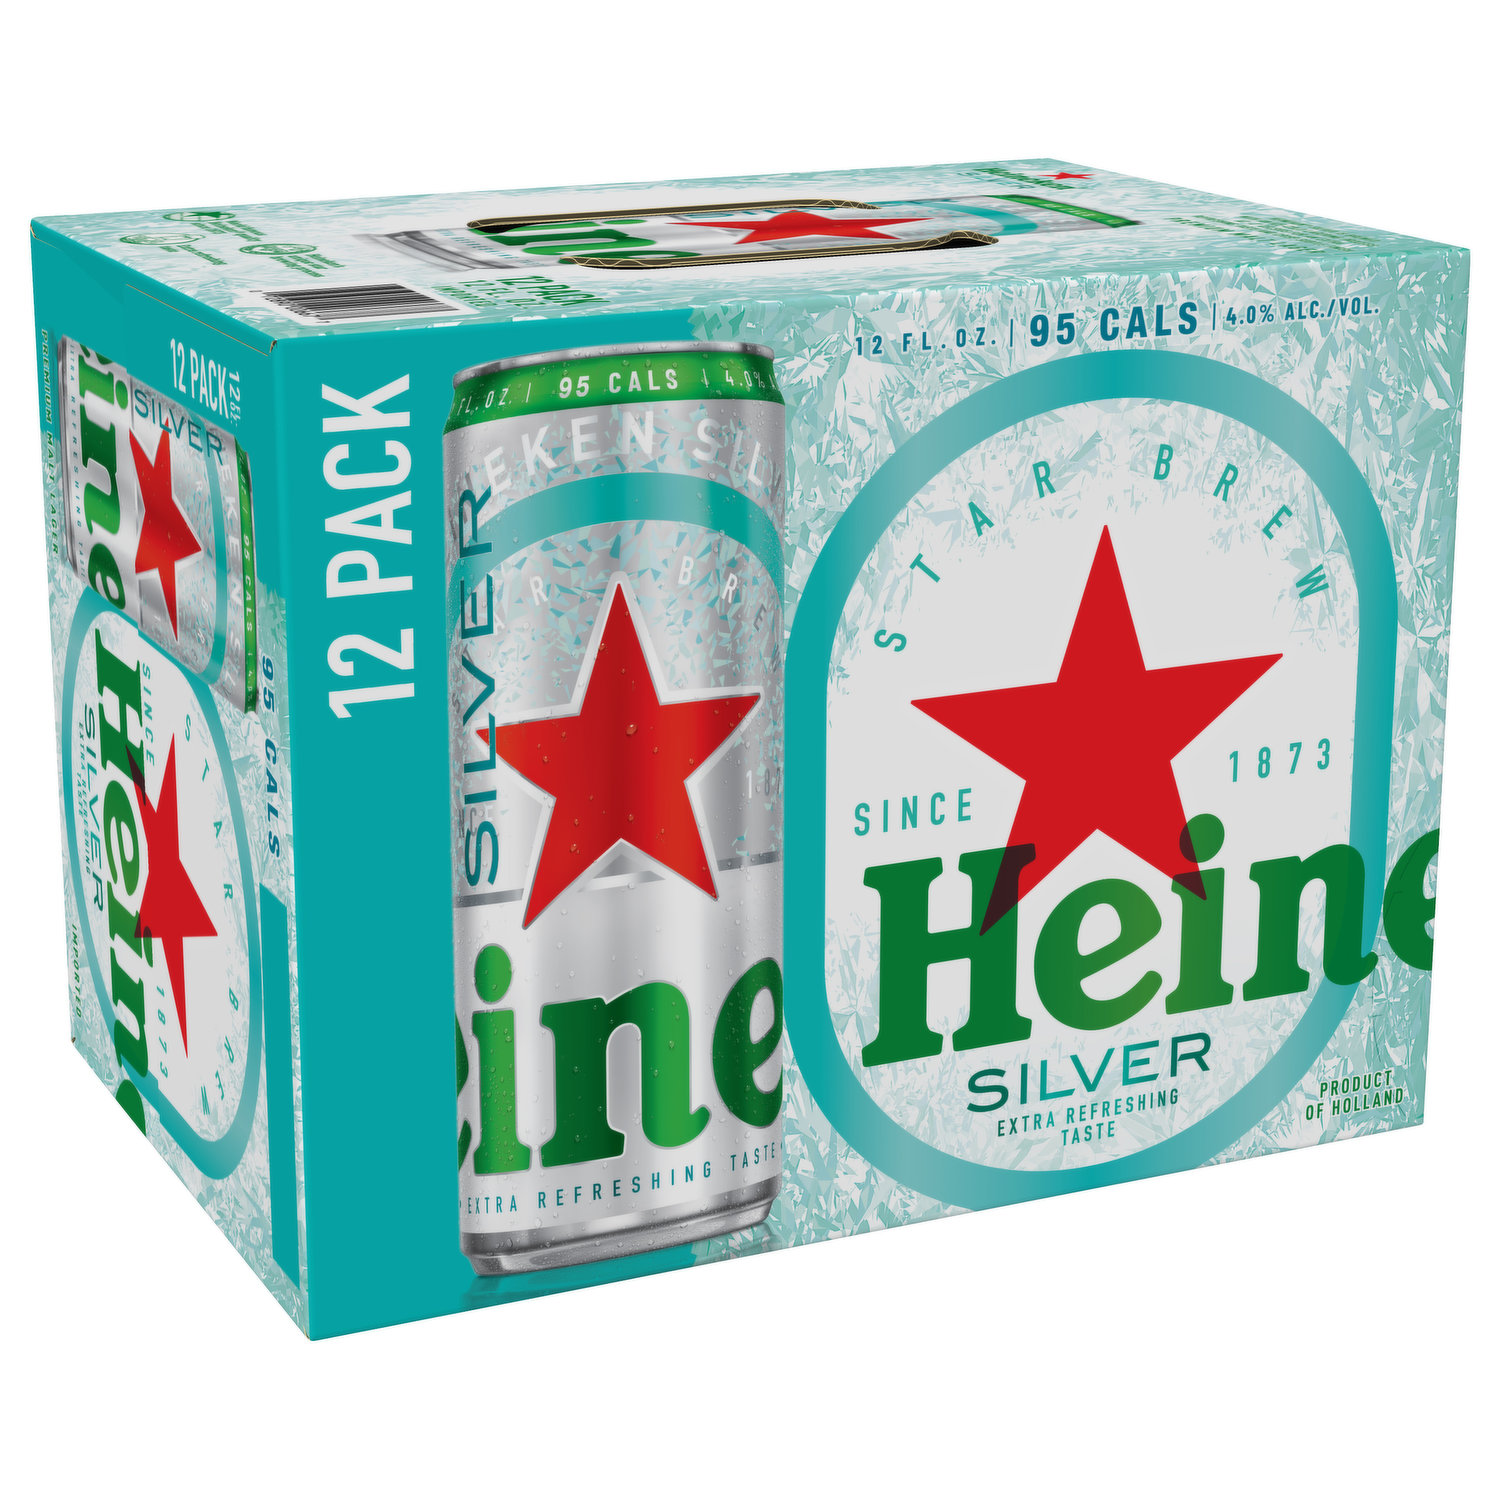 Heineken Beer, Premium Malt Lager, Silver, 12 Pack